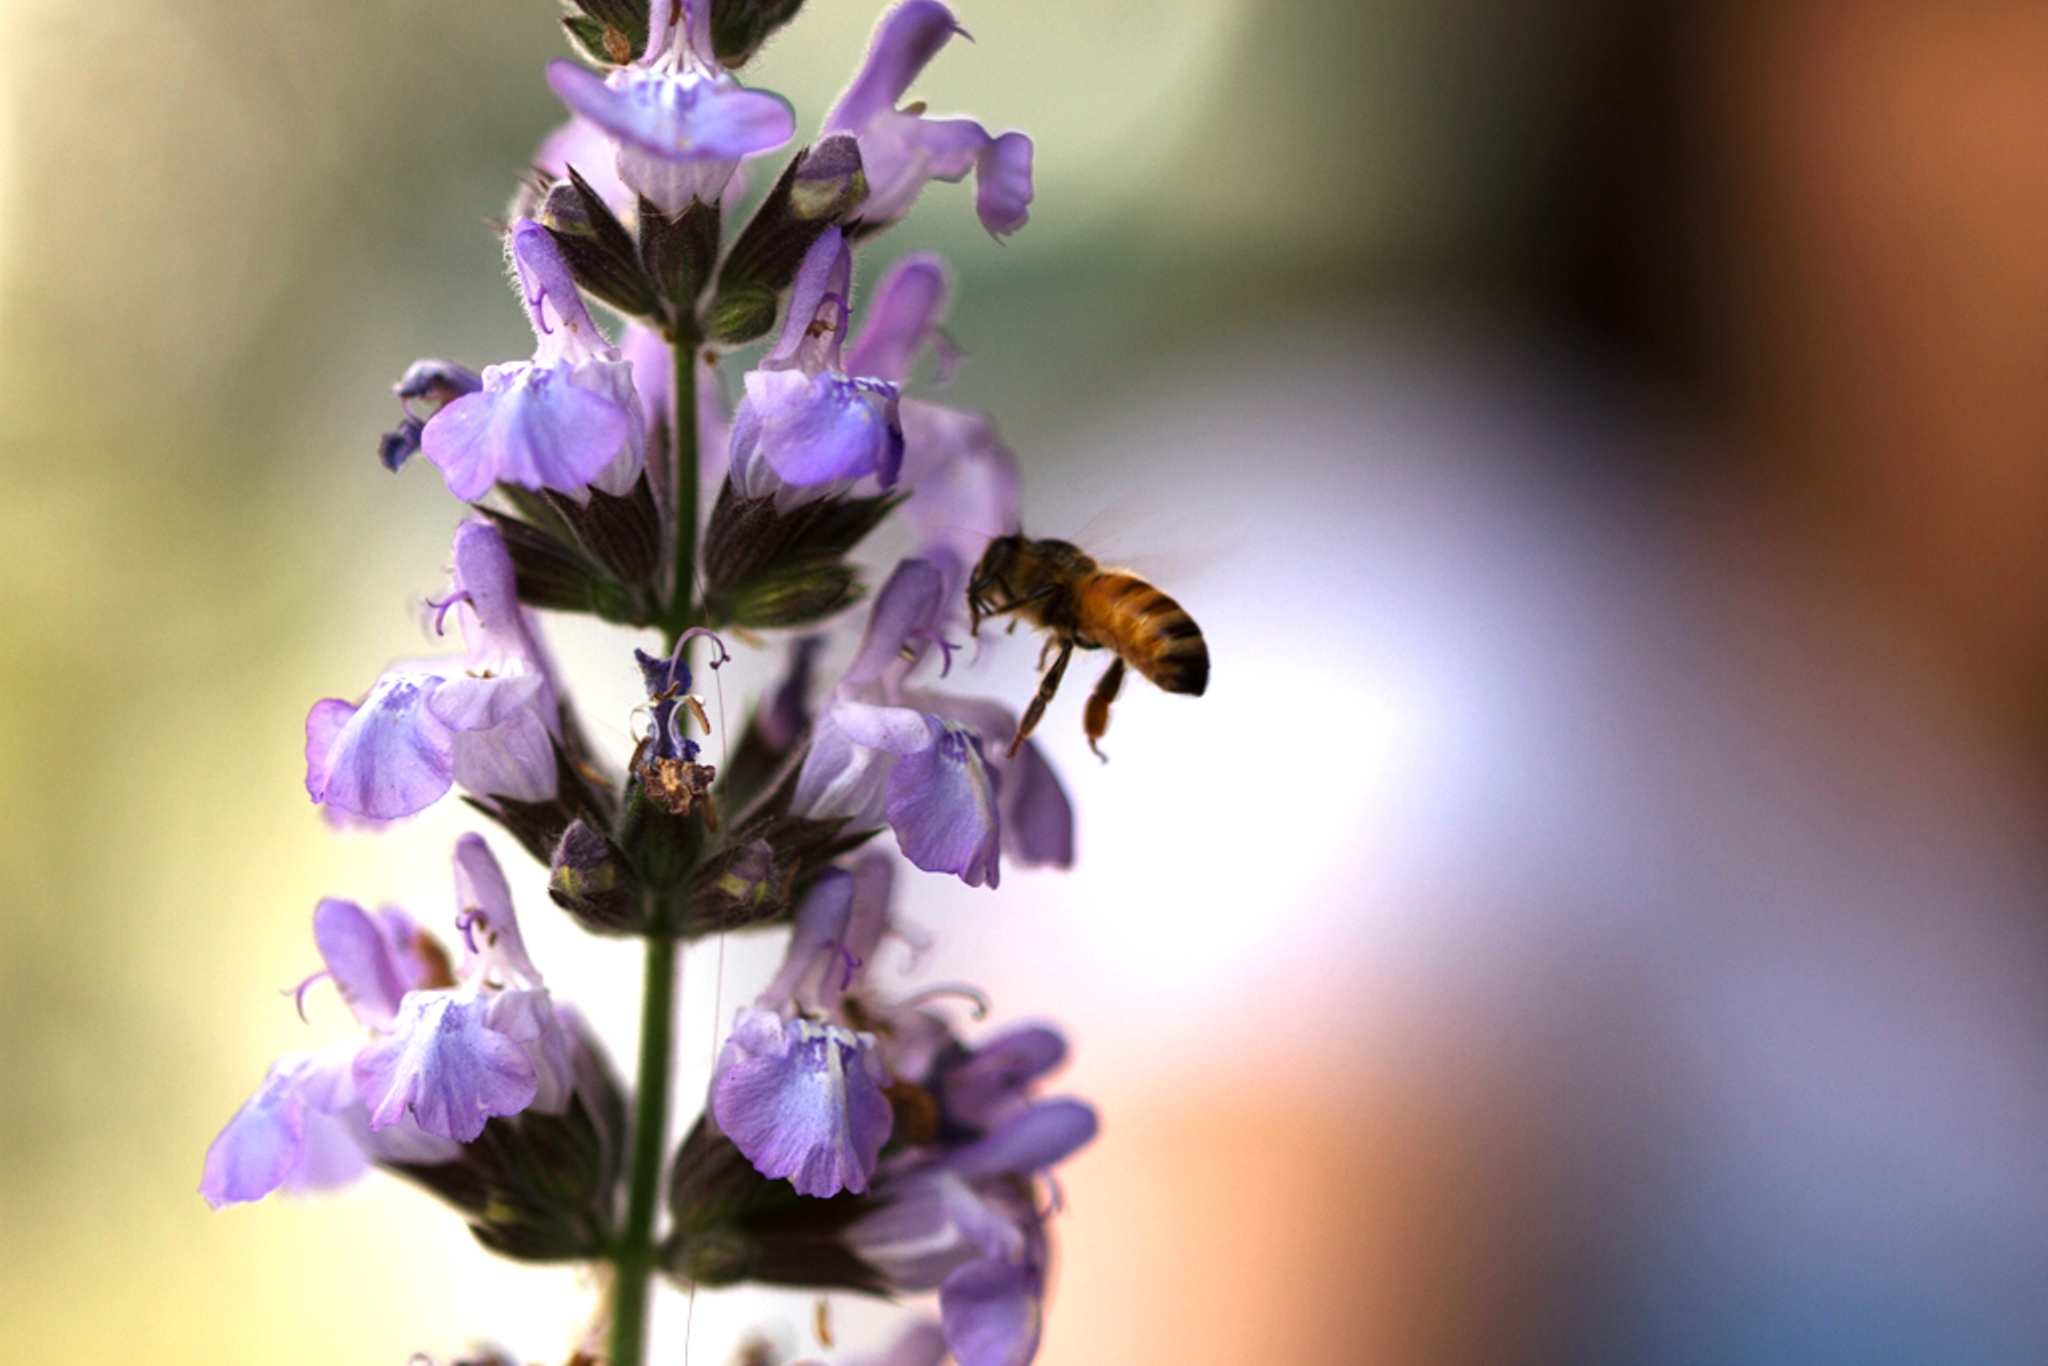 מועצת הדבש: מחקר חדש מגלה כי כמו בני אדם ישנן גם דבורים המורדות בדעות הקבוצה, סקרניות, ובעלות דעות עצמאיות